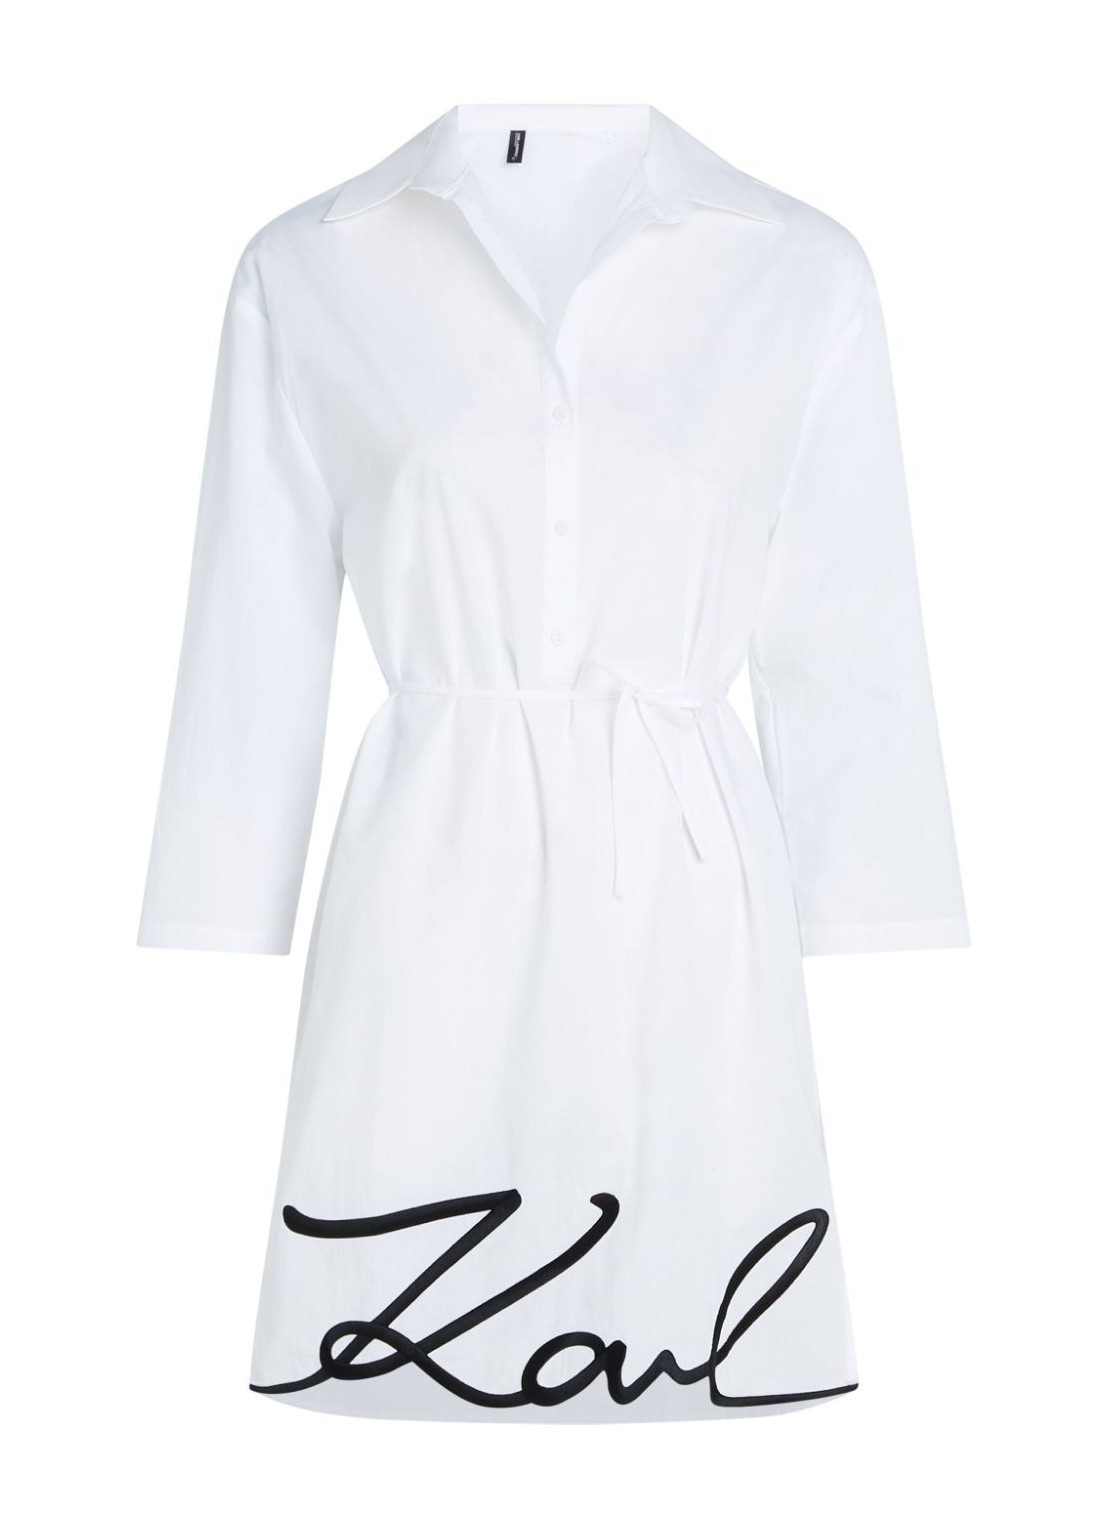 Vestido karl lagerfeld dress woman karl dna signature beach dress 240w2205 100 talla blanco
 